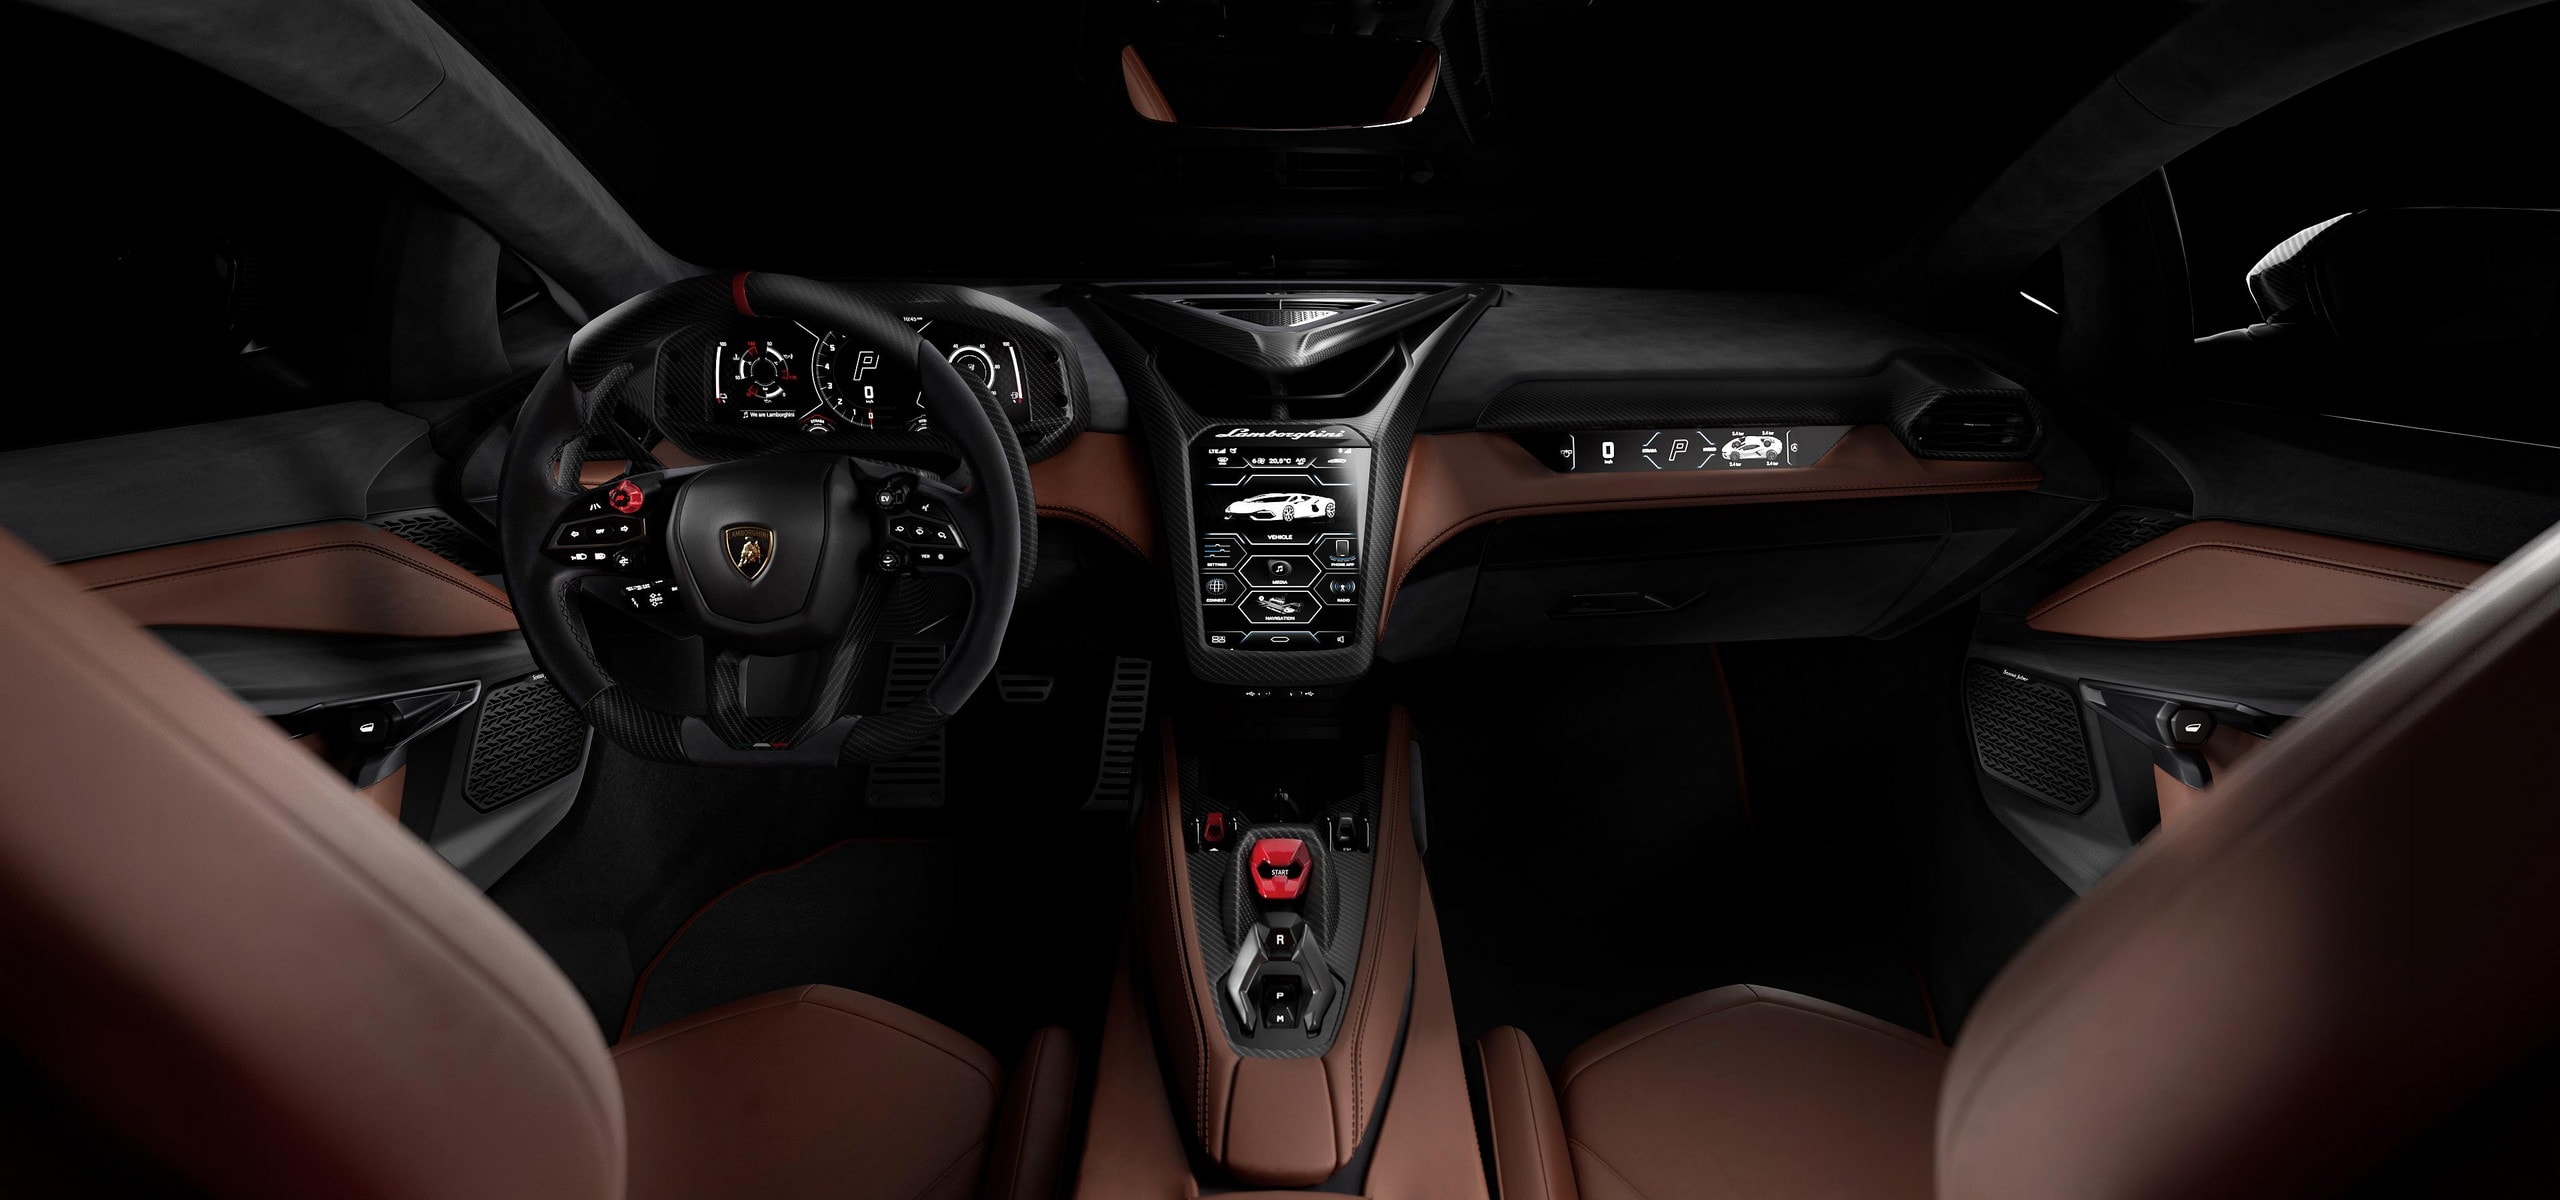 Lamborghini's Hybrid Supercar & Sonus faber Audio Upgrade